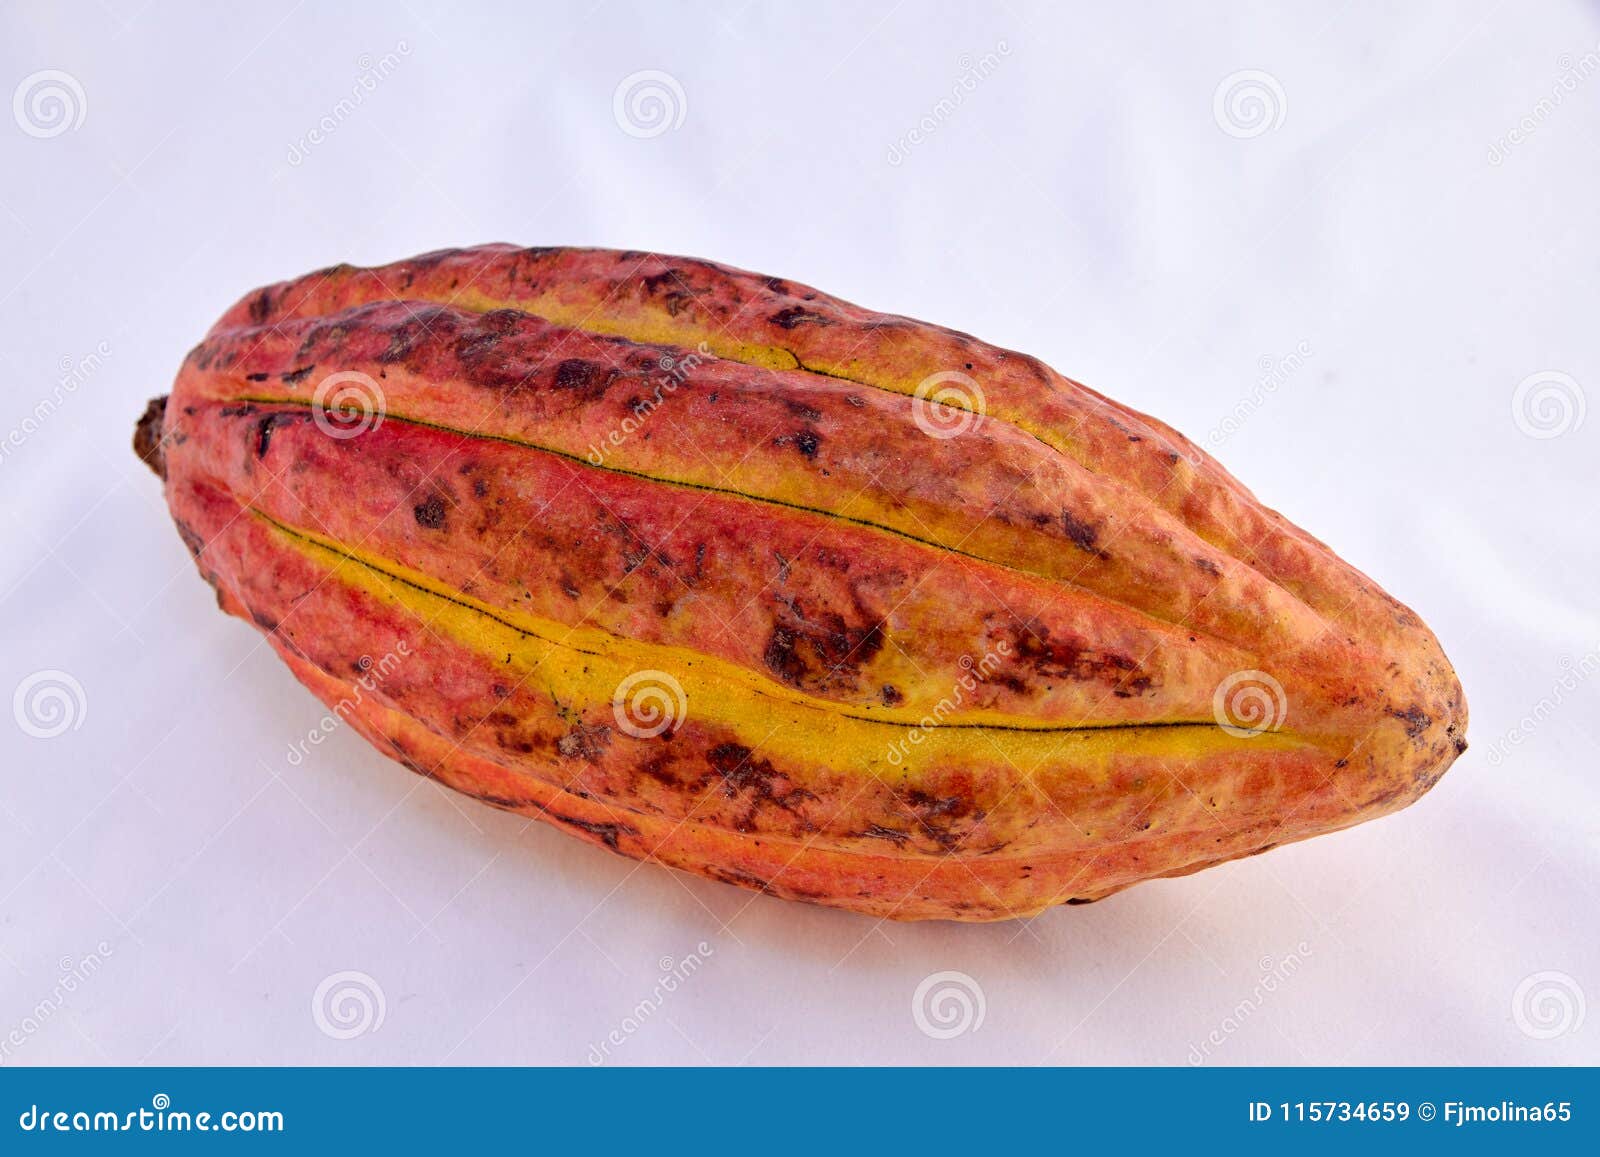 criollo variety cocoa fruit